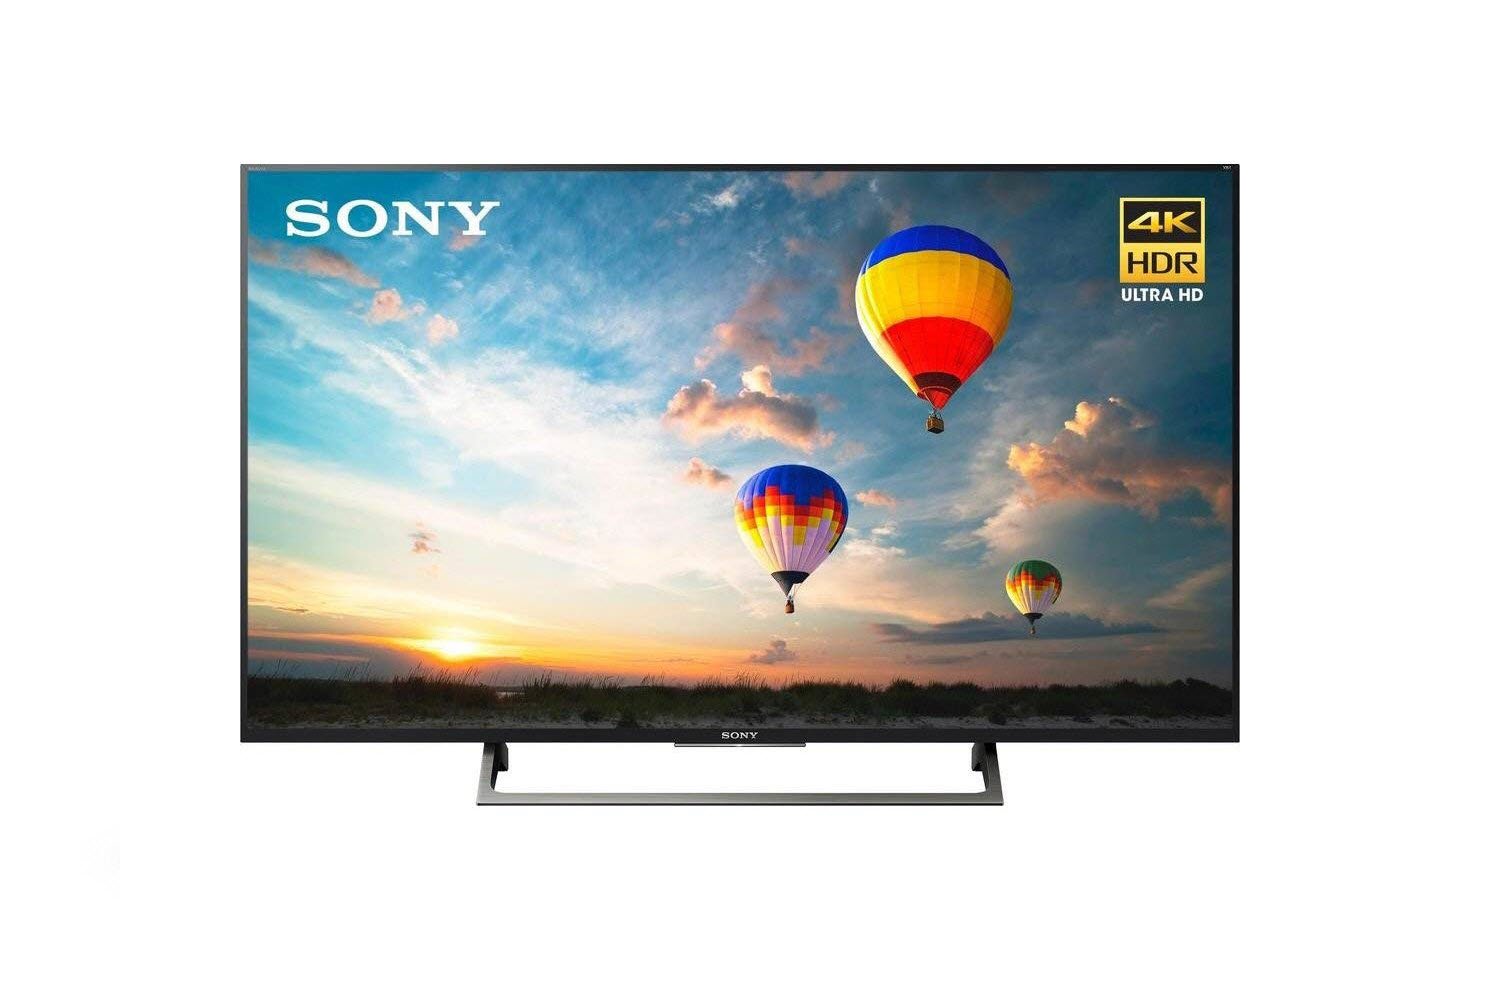 Sony XBR-49X800E 49-inch 4K HDR Ultra HD Smart LED TV (2017 Model) w/Hulu $25 Gift Card